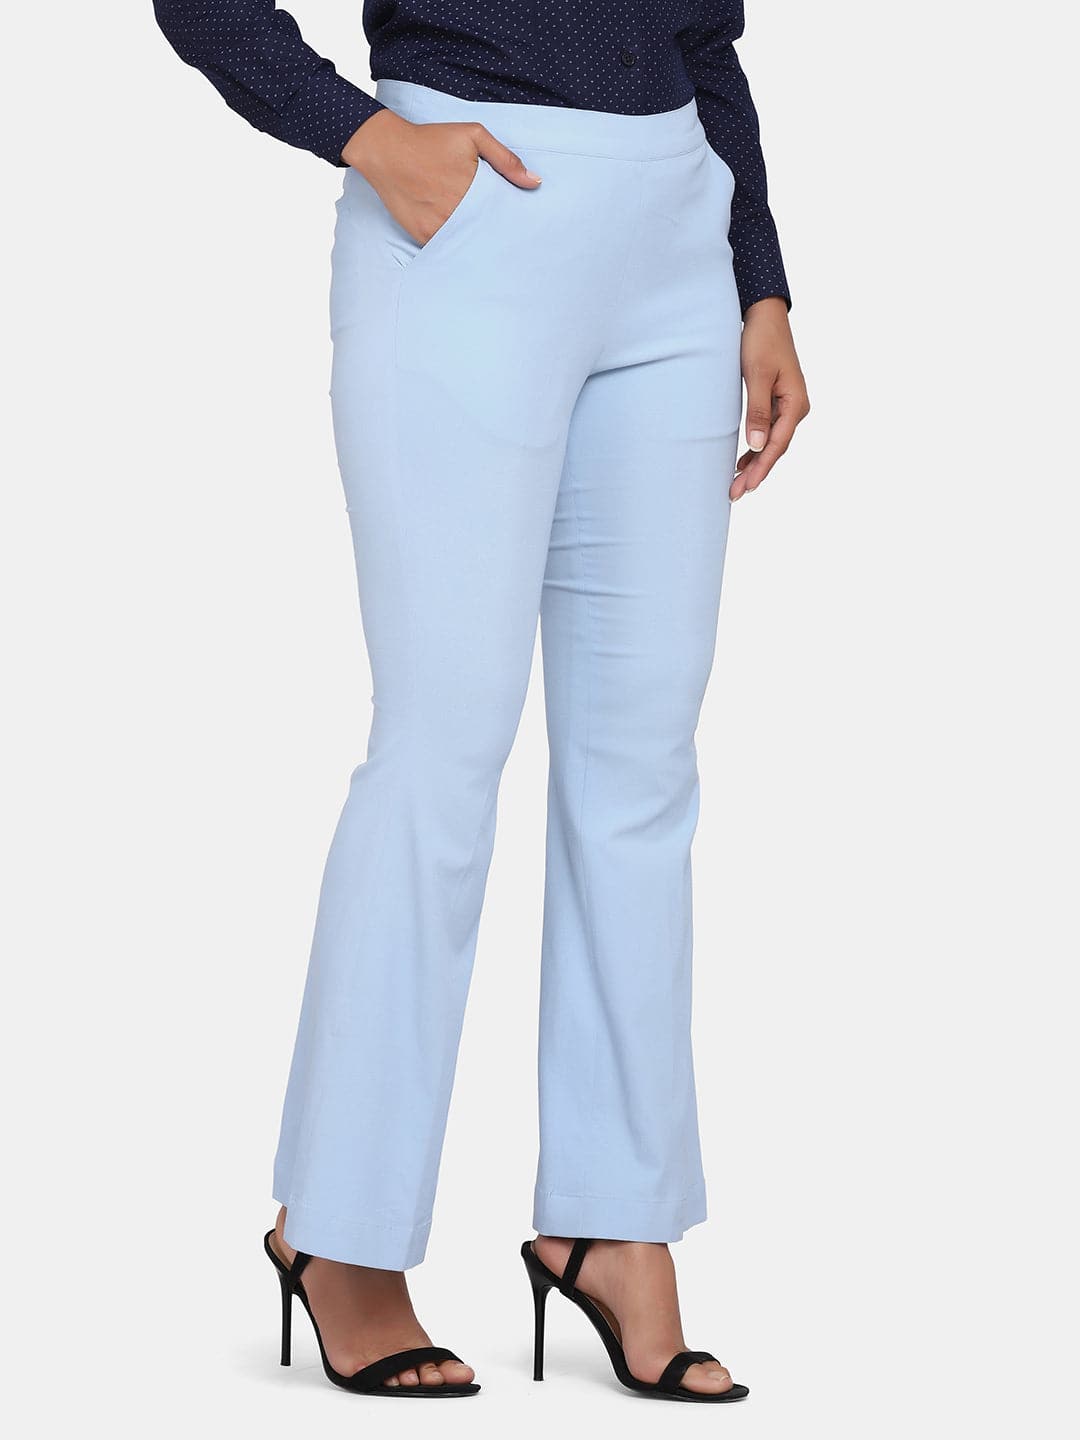 Salt Attire Women's Sky Blue Formal Side Zip Pant